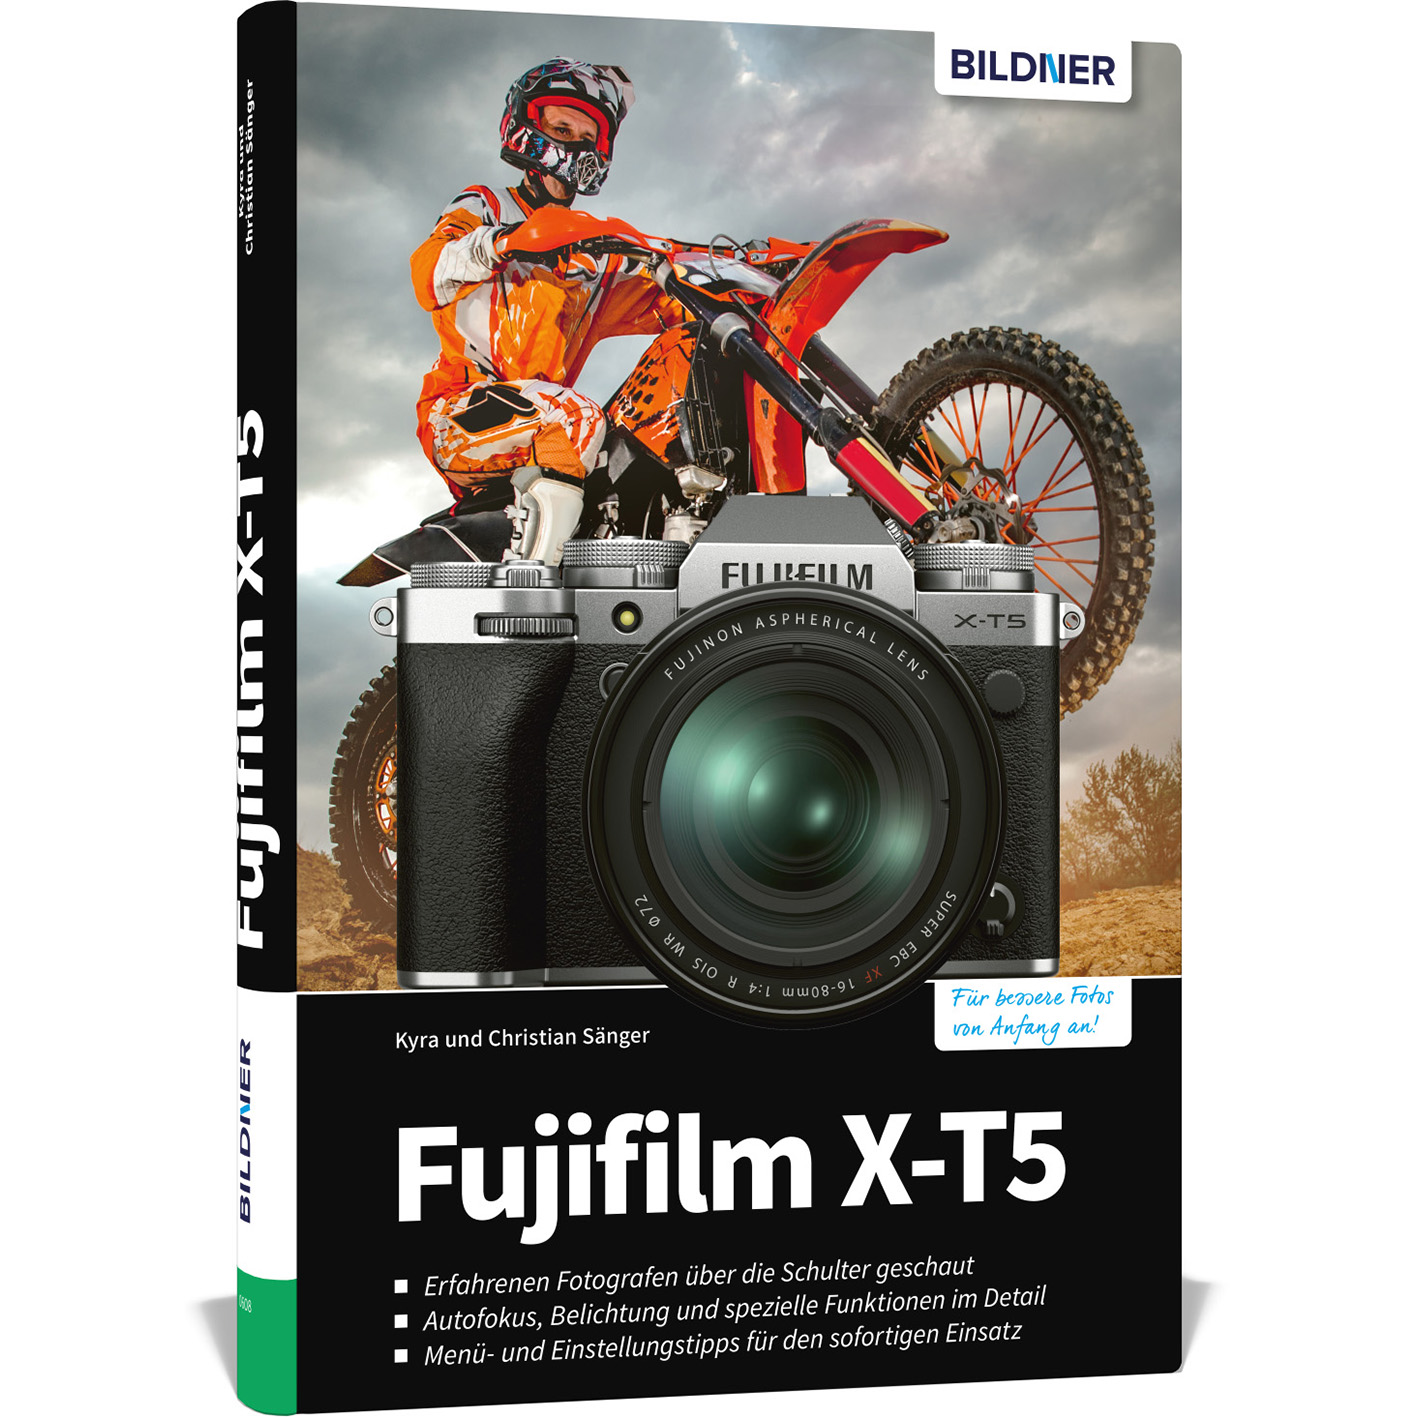 Das - Kamera Ihrer zu Fujifilm Praxisbuch umfangreiche X-T5